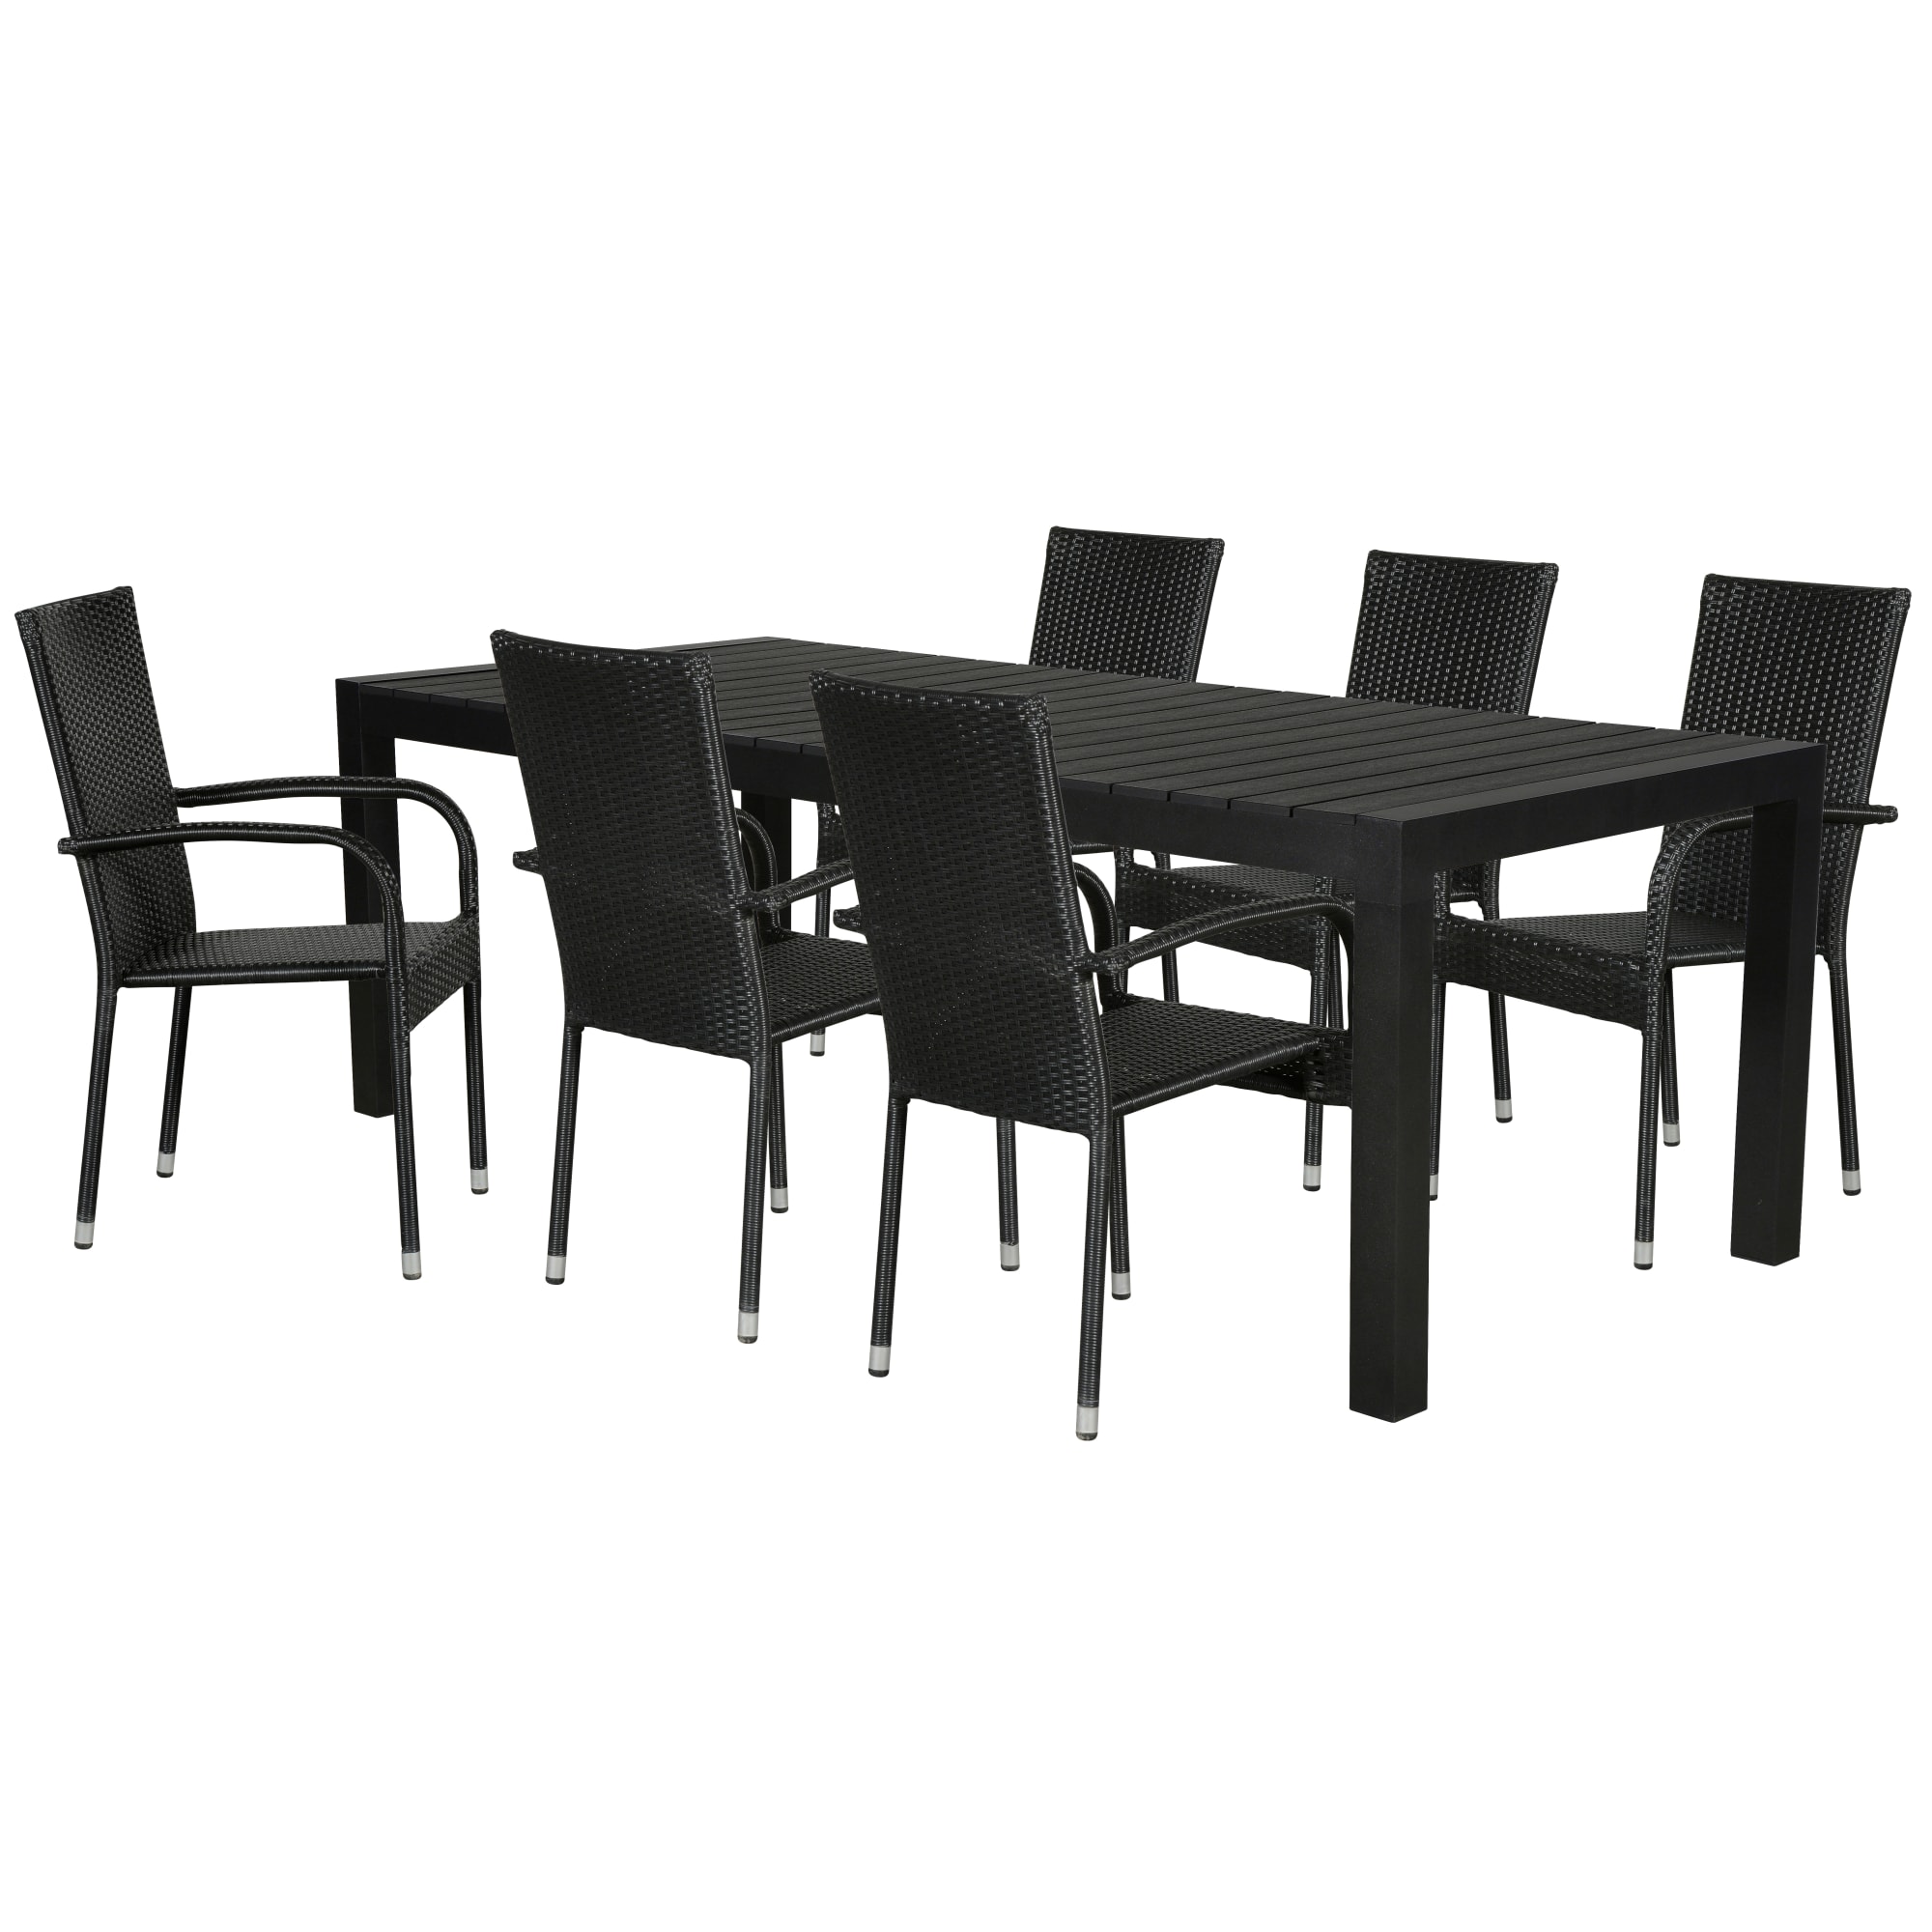 Udtræksbord (L 205-275 cm) og stabelbare stole